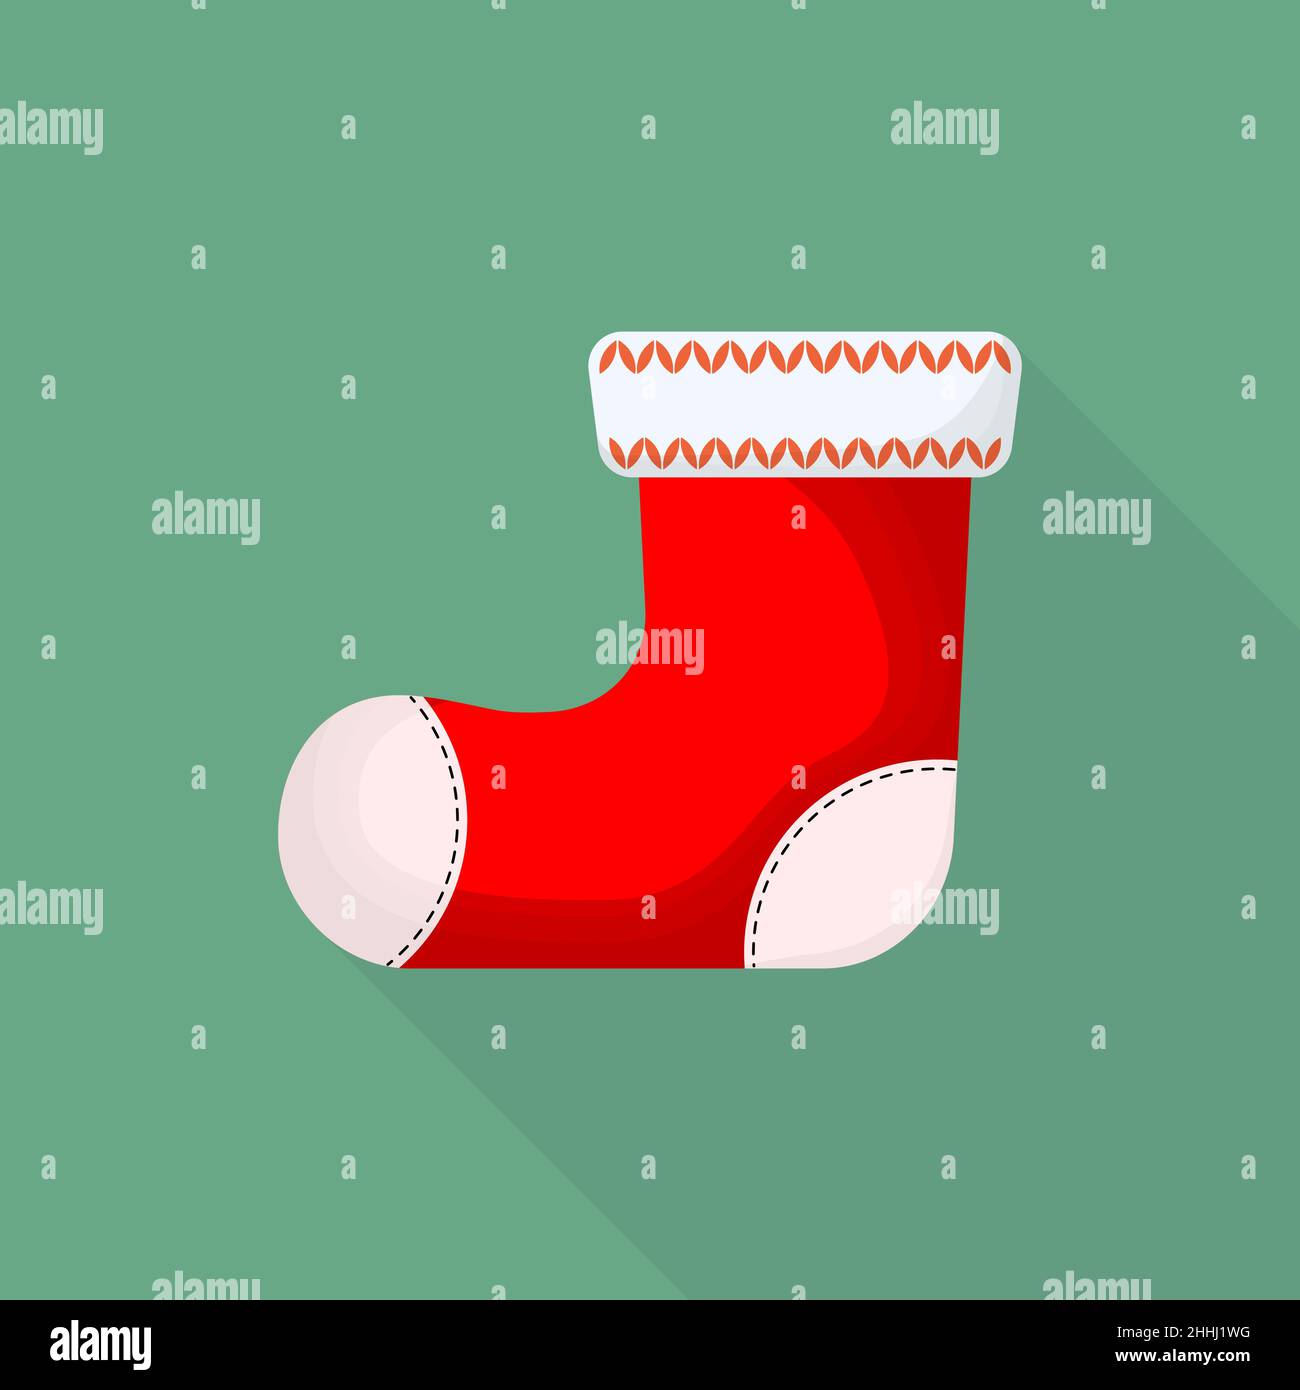 Roter weihnachtsstiefel mit langem Schatten, auf grünem Hintergrund. Vektorgrafik. Weihnachtsstiefel in flachem Design. Stock Vektor